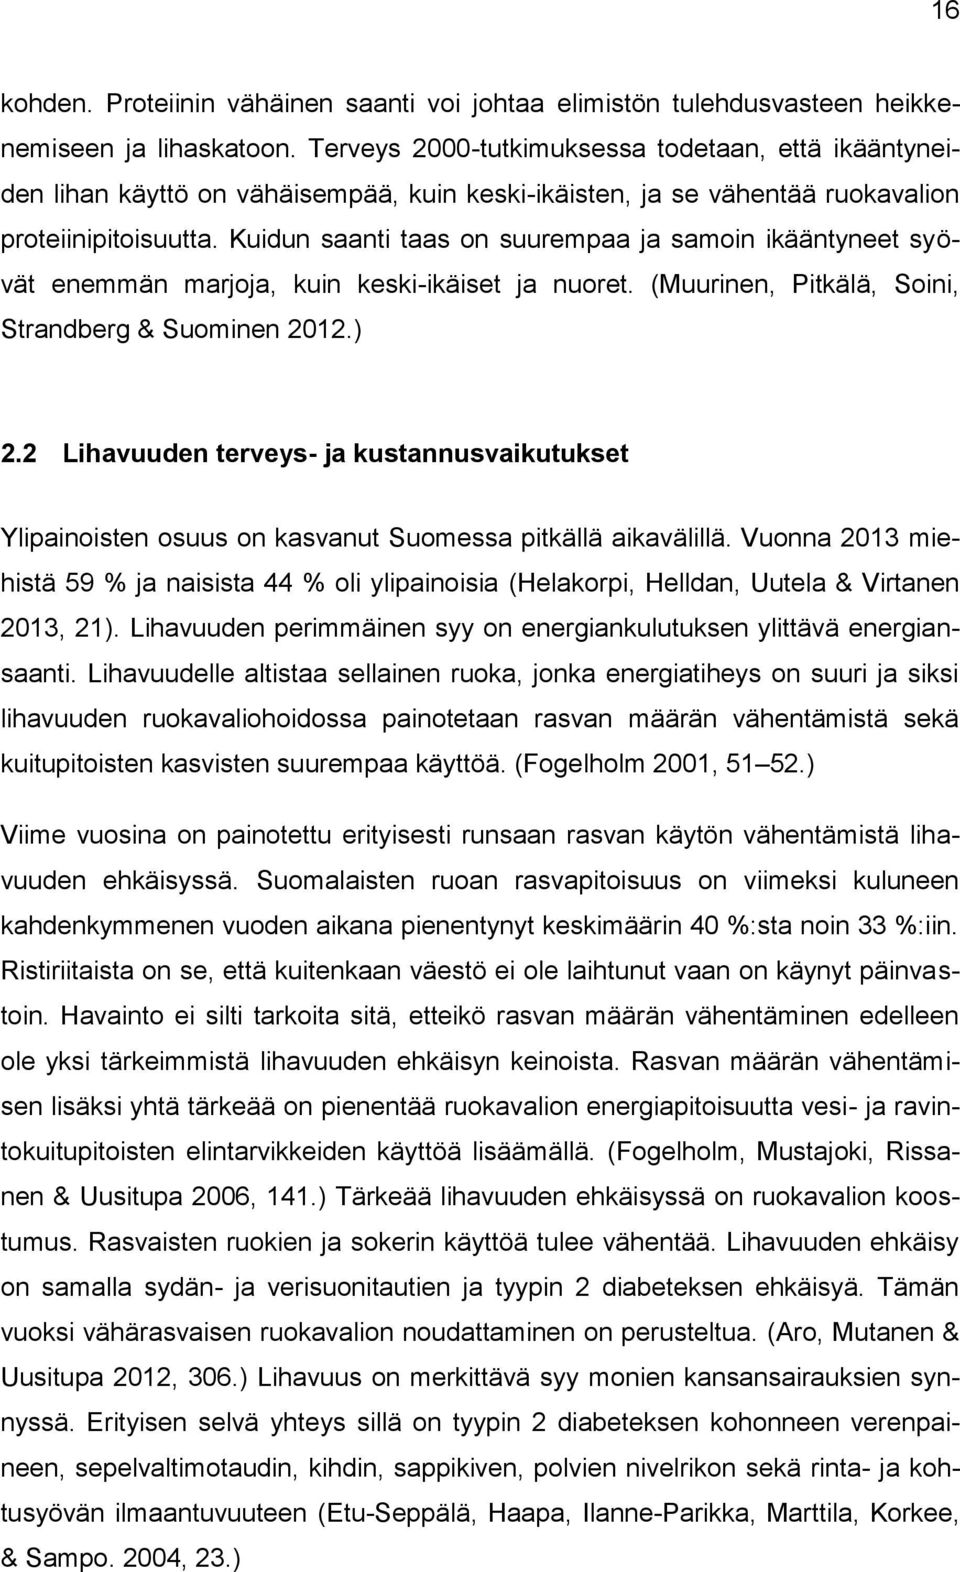 Kuidun saanti taas on suurempaa ja samoin ikääntyneet syövät enemmän marjoja, kuin keski-ikäiset ja nuoret. (Muurinen, Pitkälä, Soini, Strandberg & Suominen 2012.) 2.